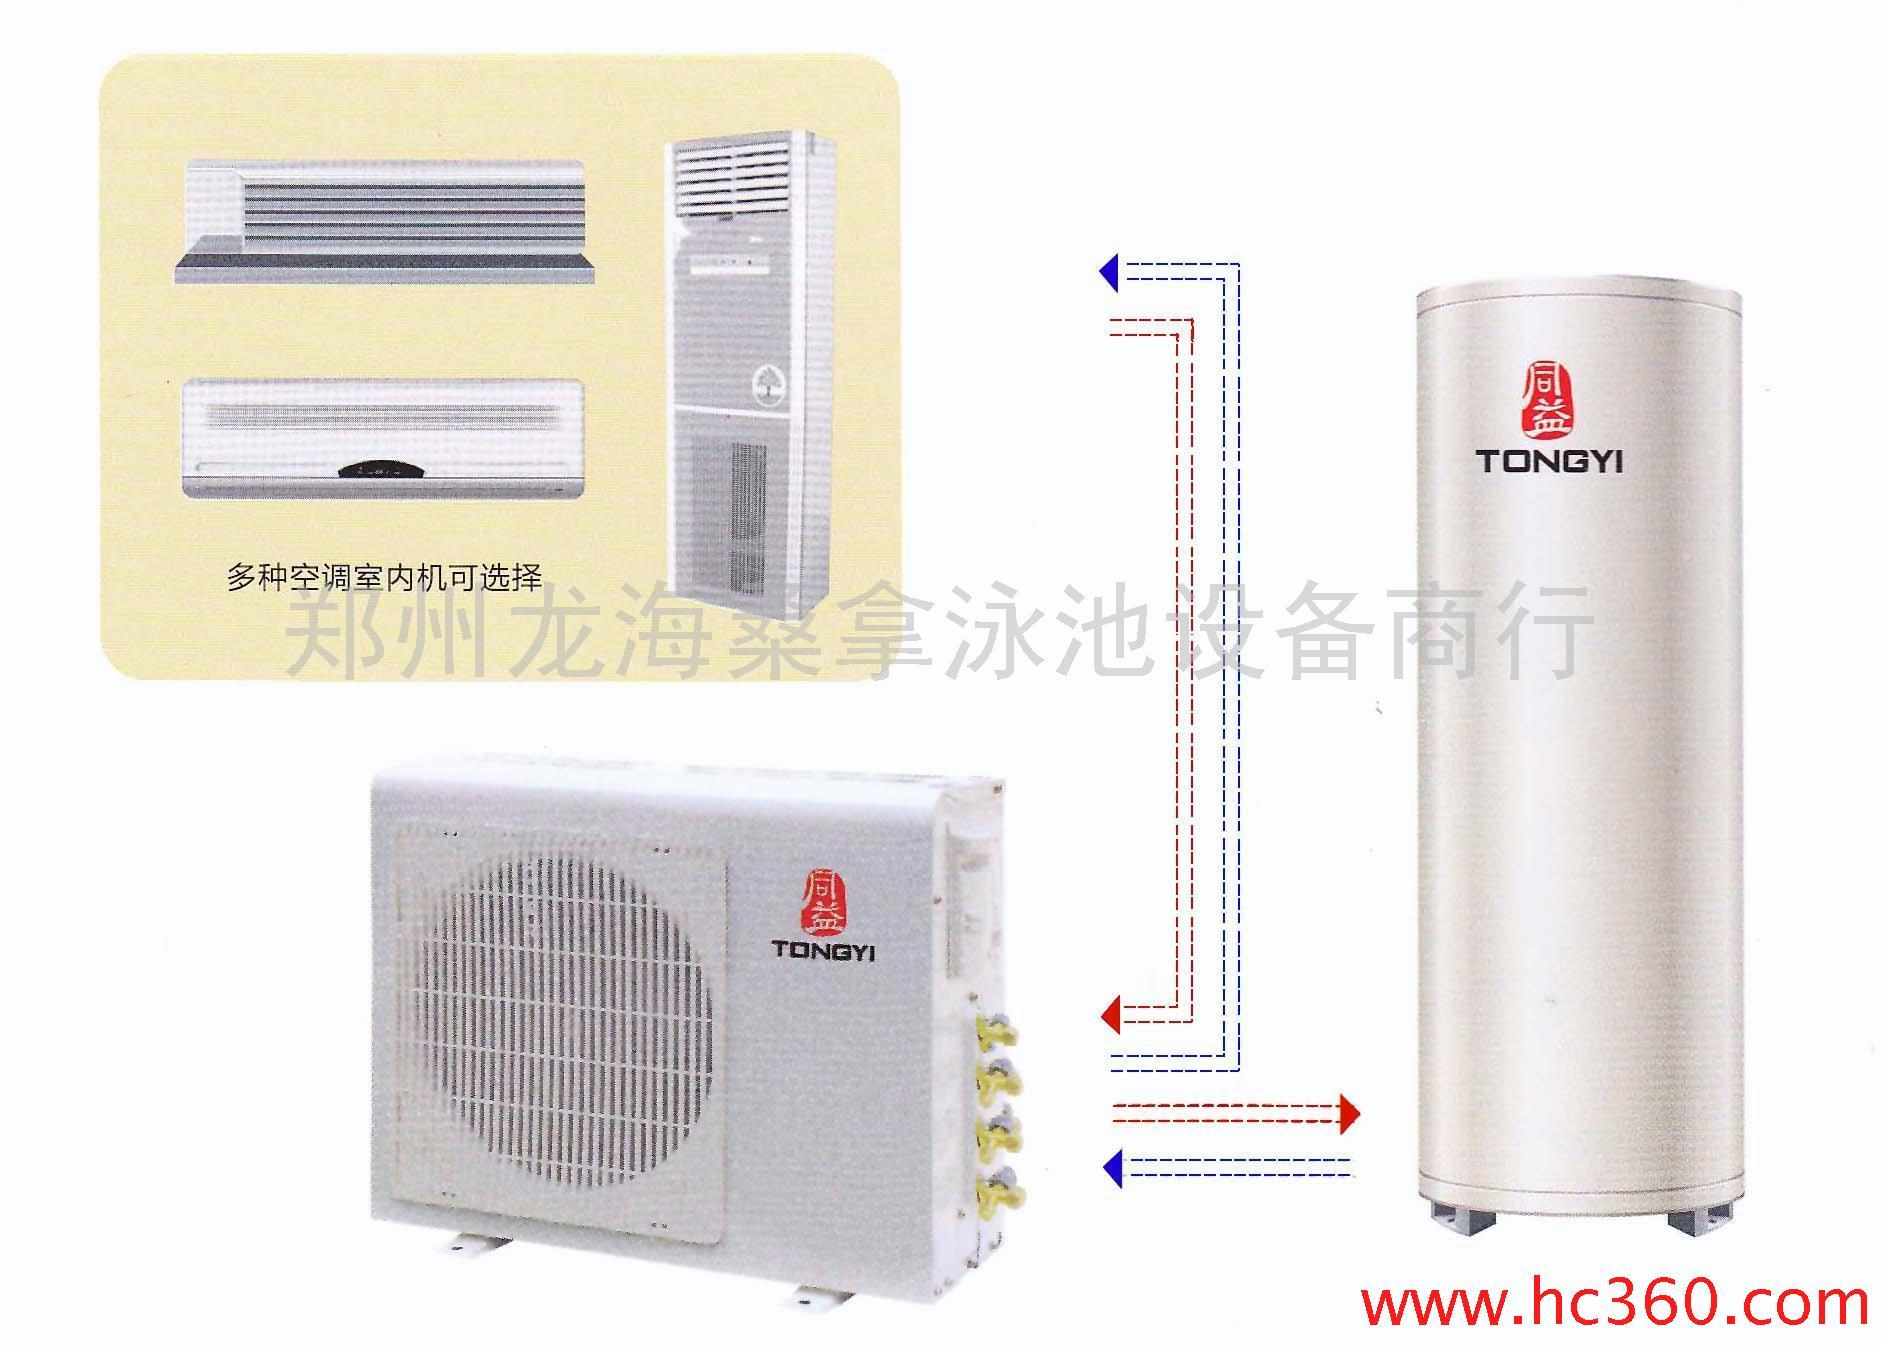 供应售空气能热水器 同益空气能热水器 美容院空气能热水器  宾馆空气能热水器